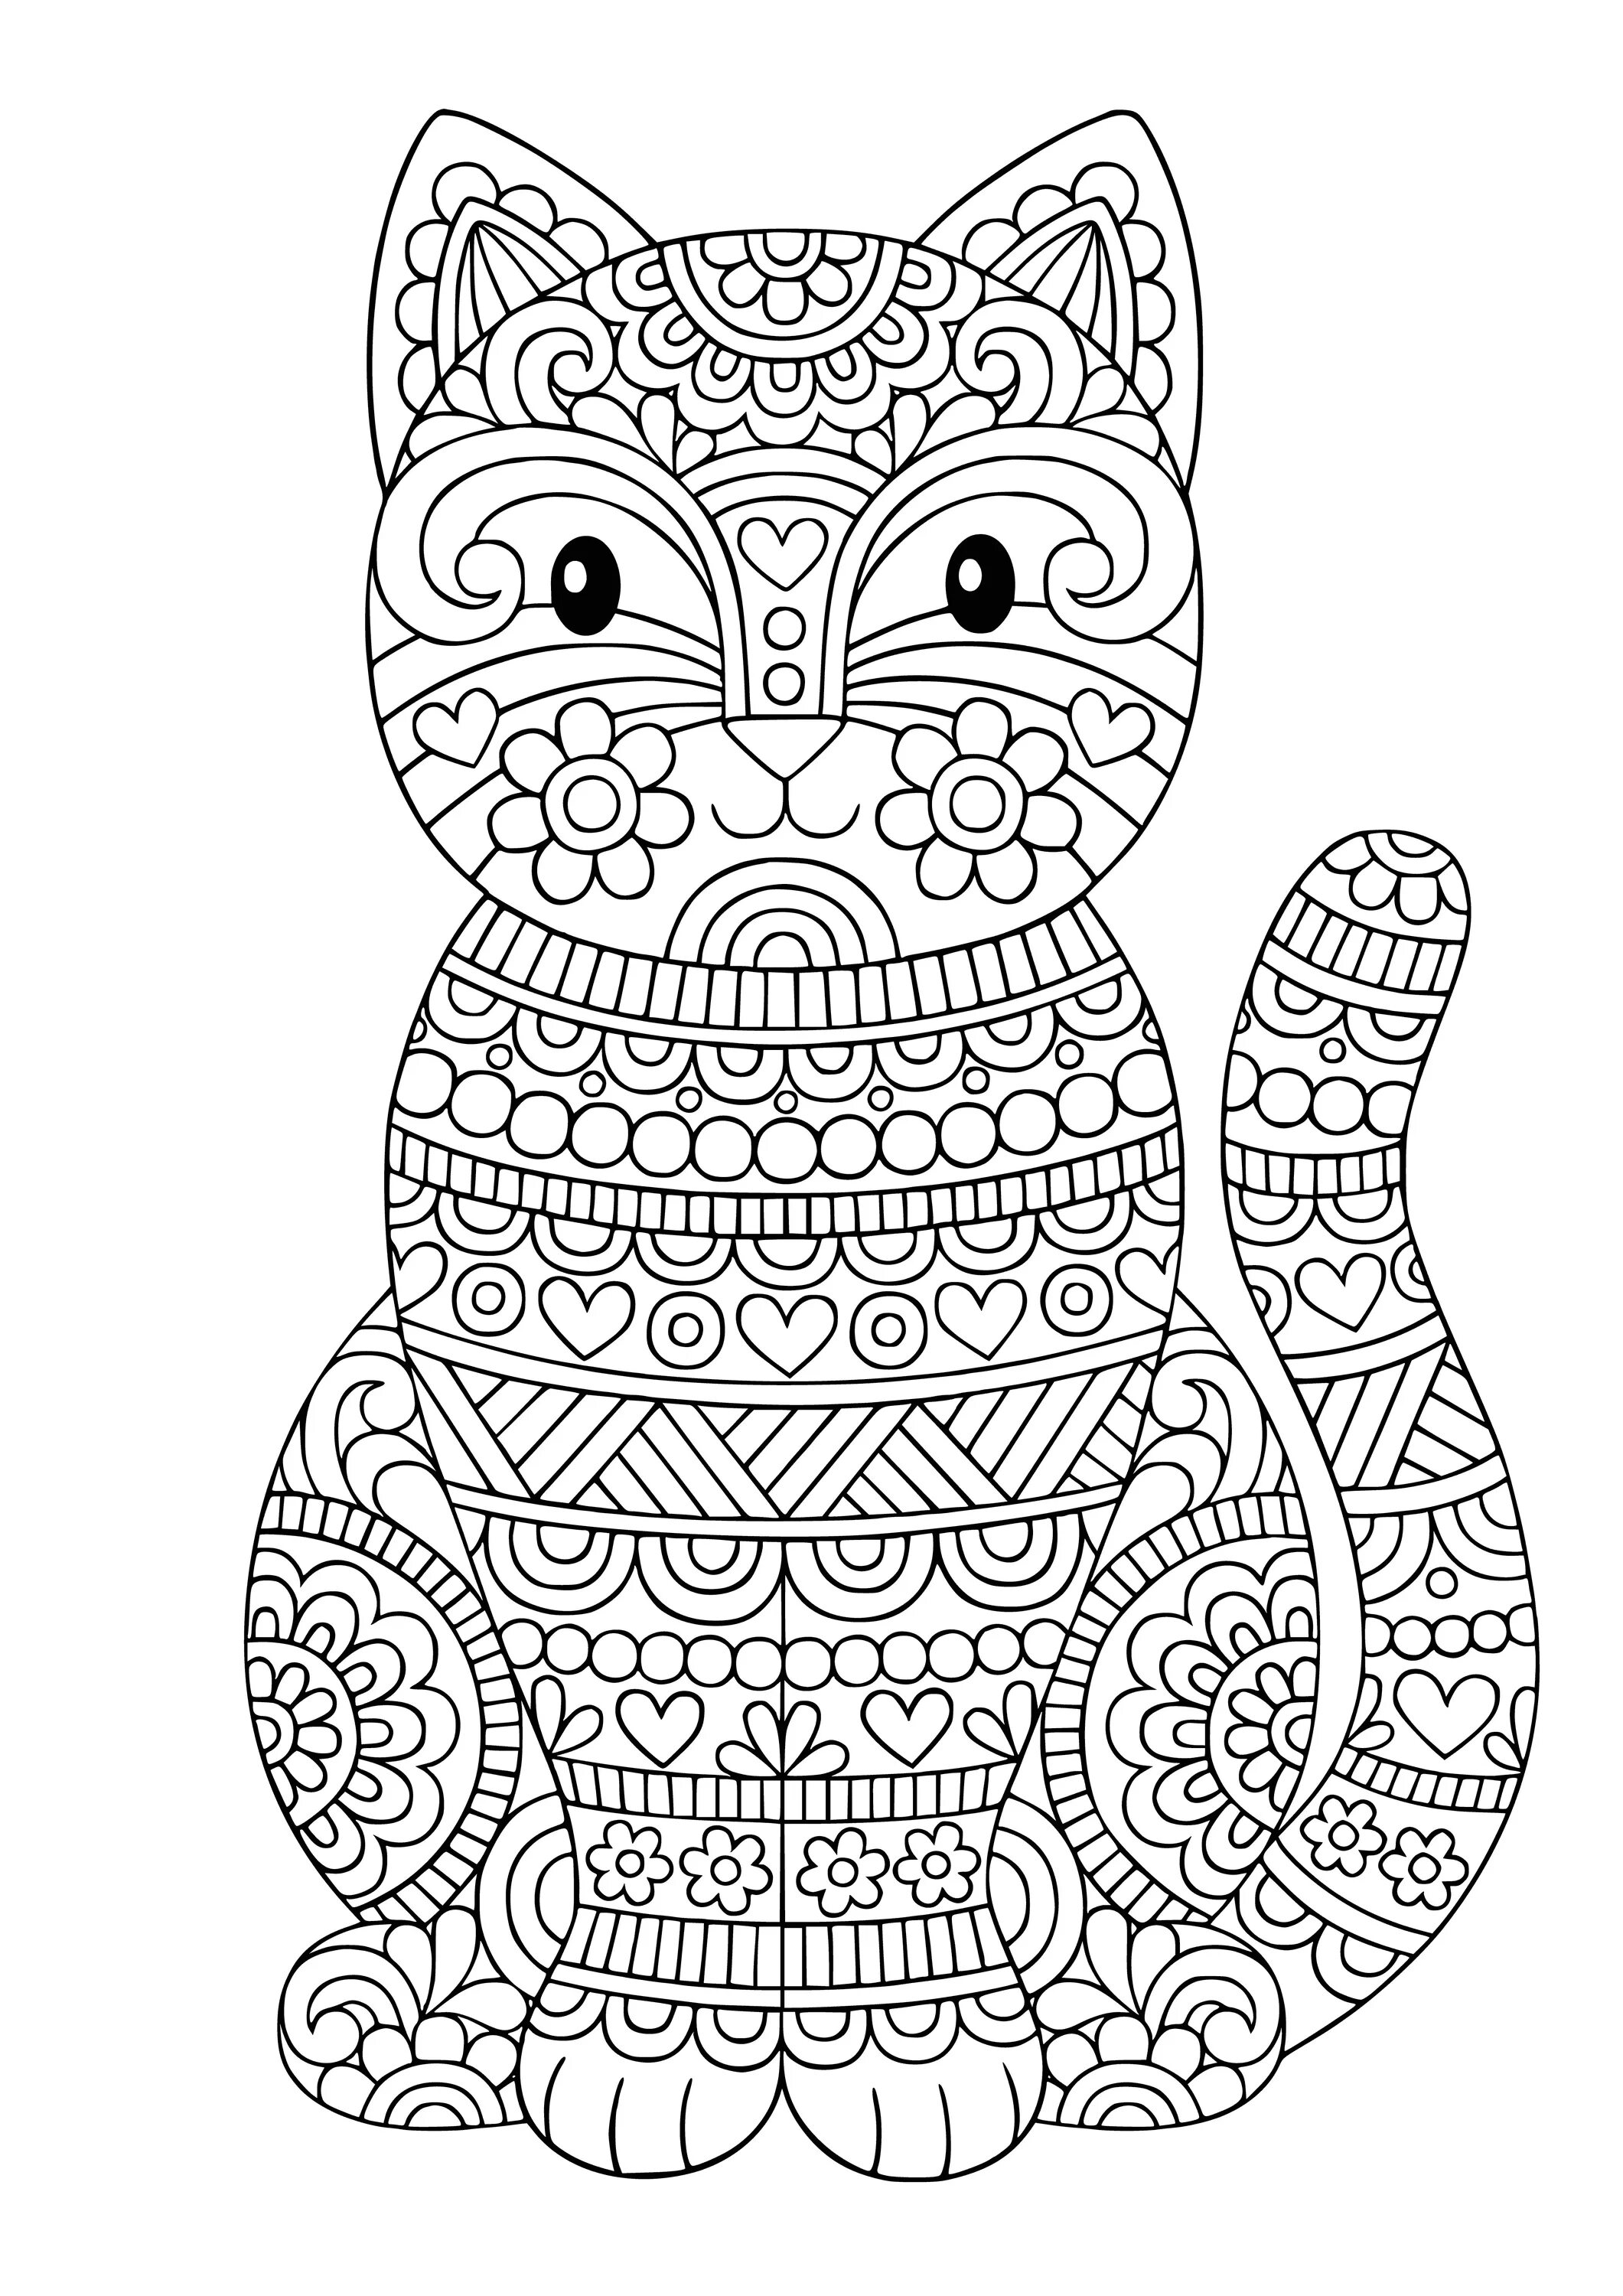 Magic coloring mandala cat